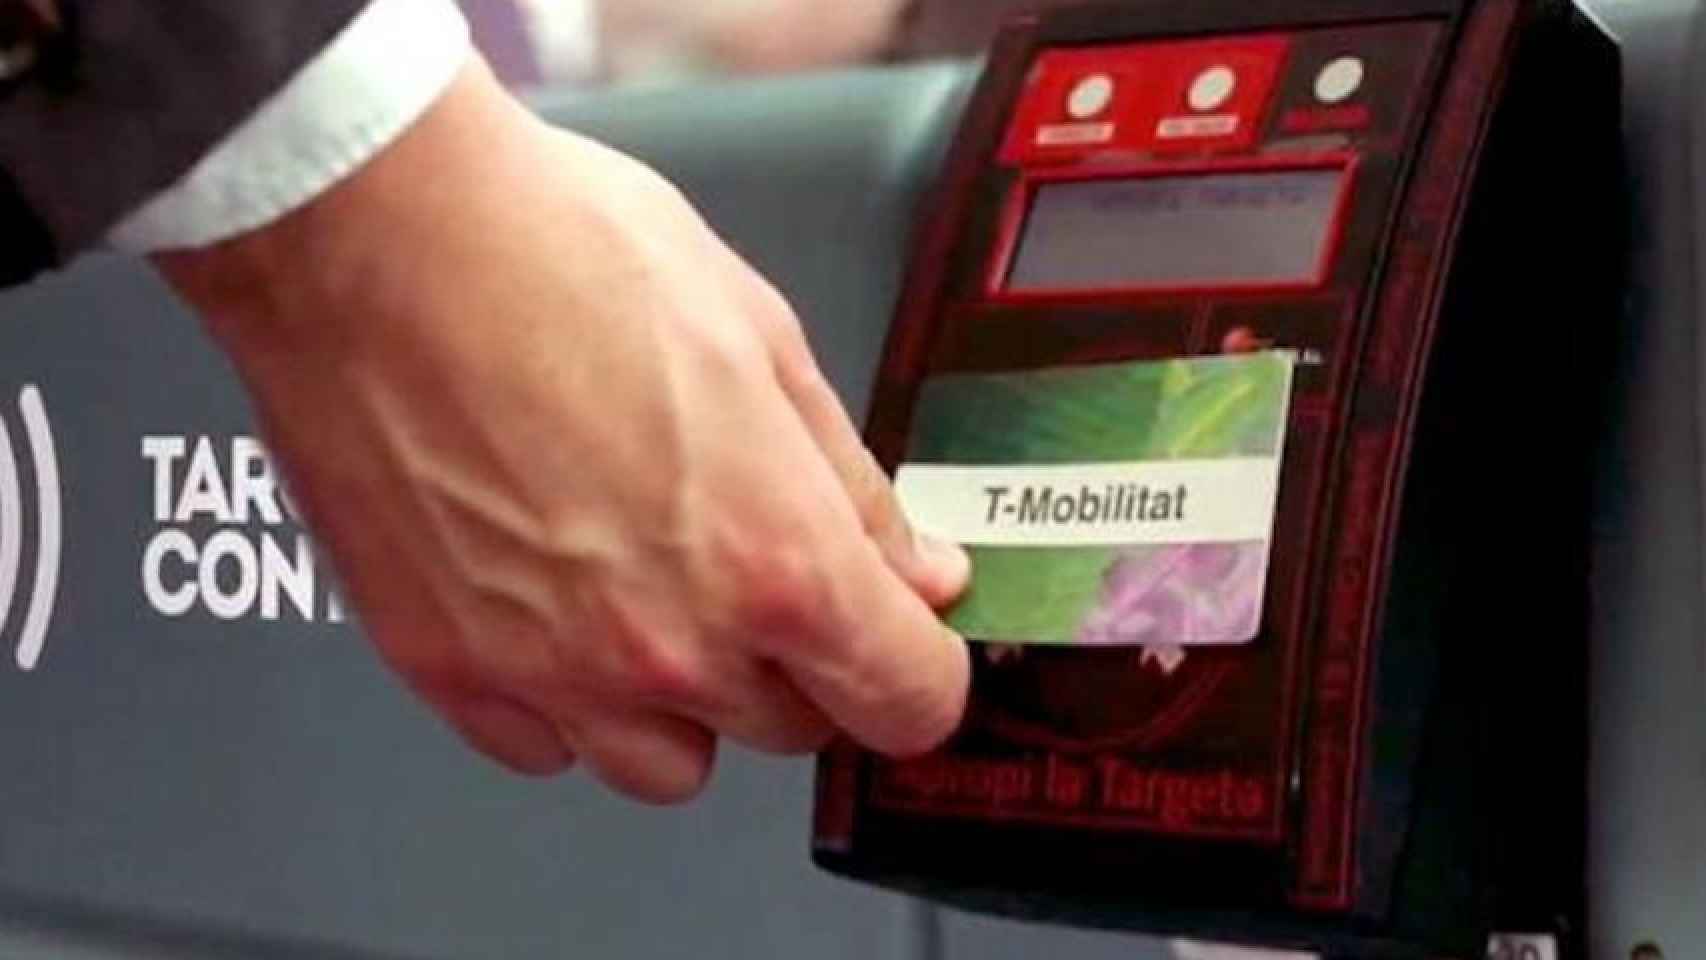 Un usuario utiliza una T-Mobilitat / ATM